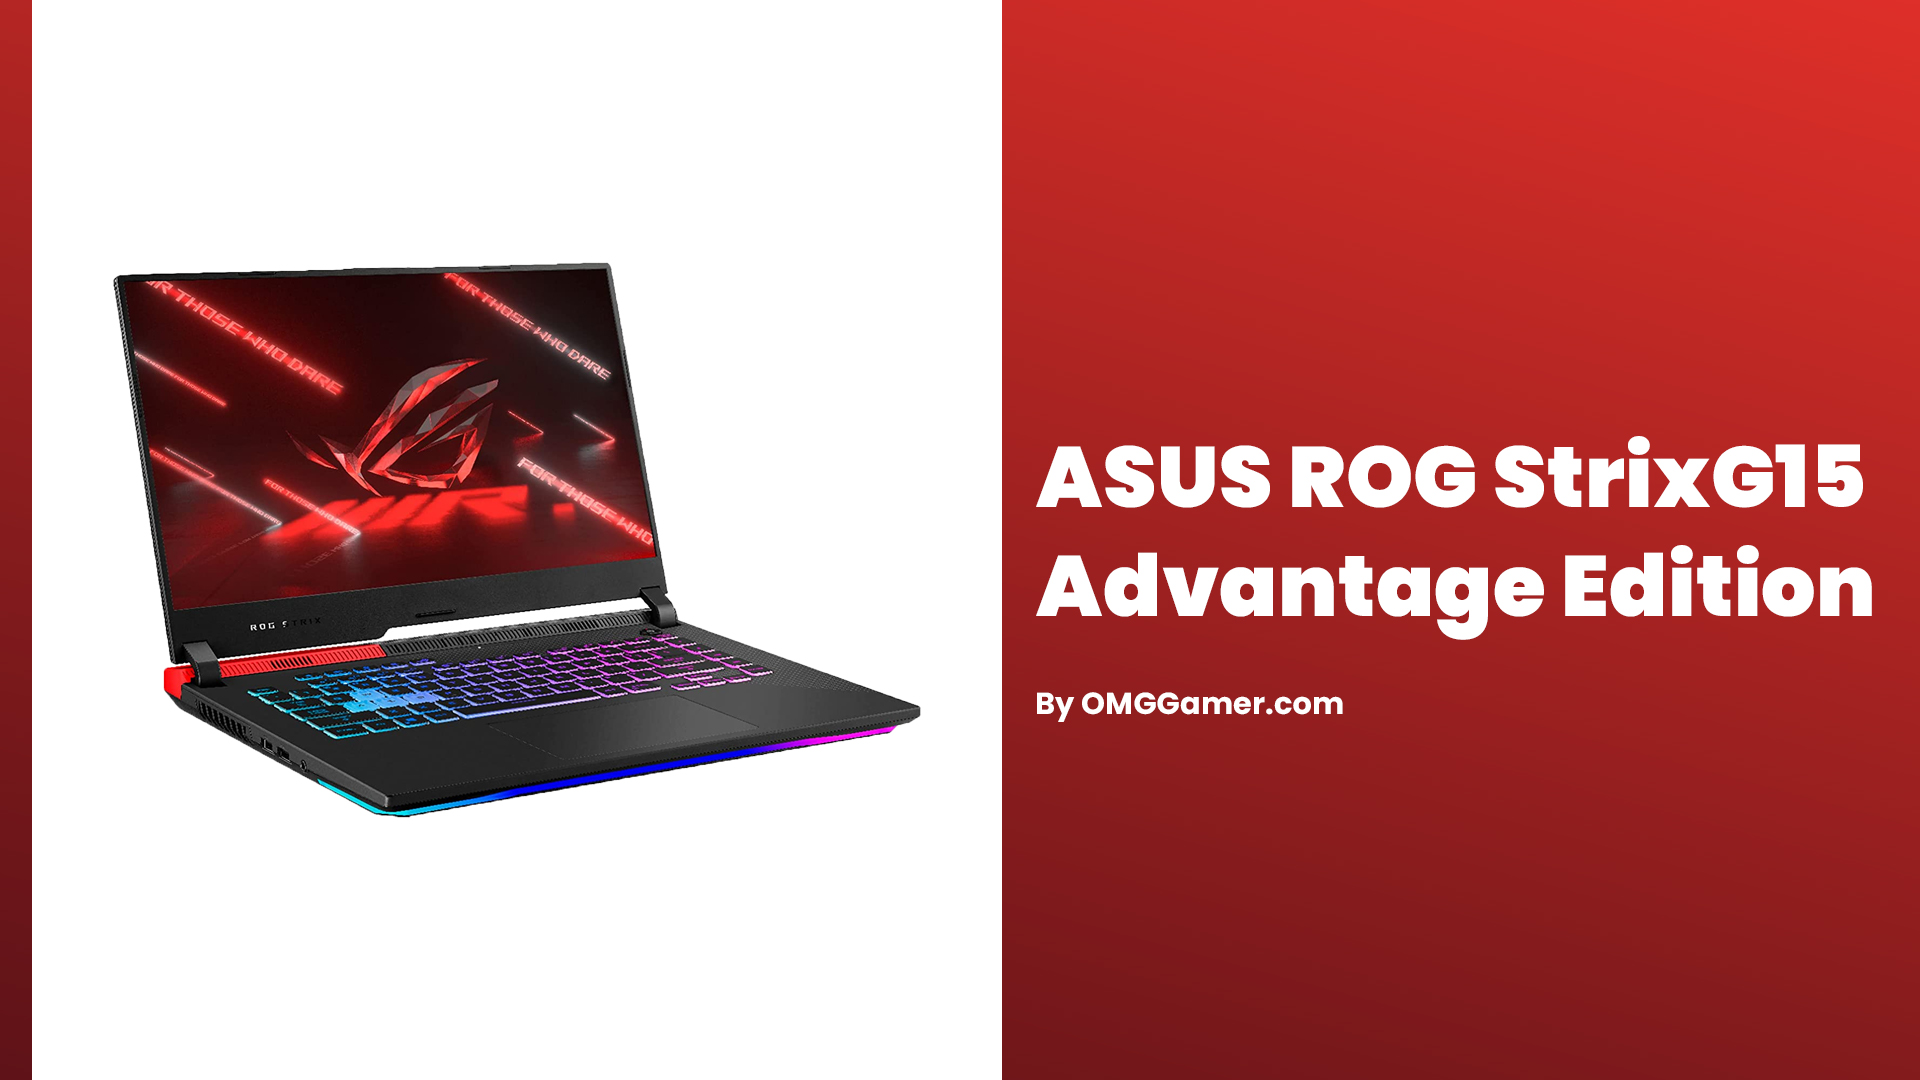 ASUS ROG Strix G15 Advantage Edition: 144 Hz Laptop